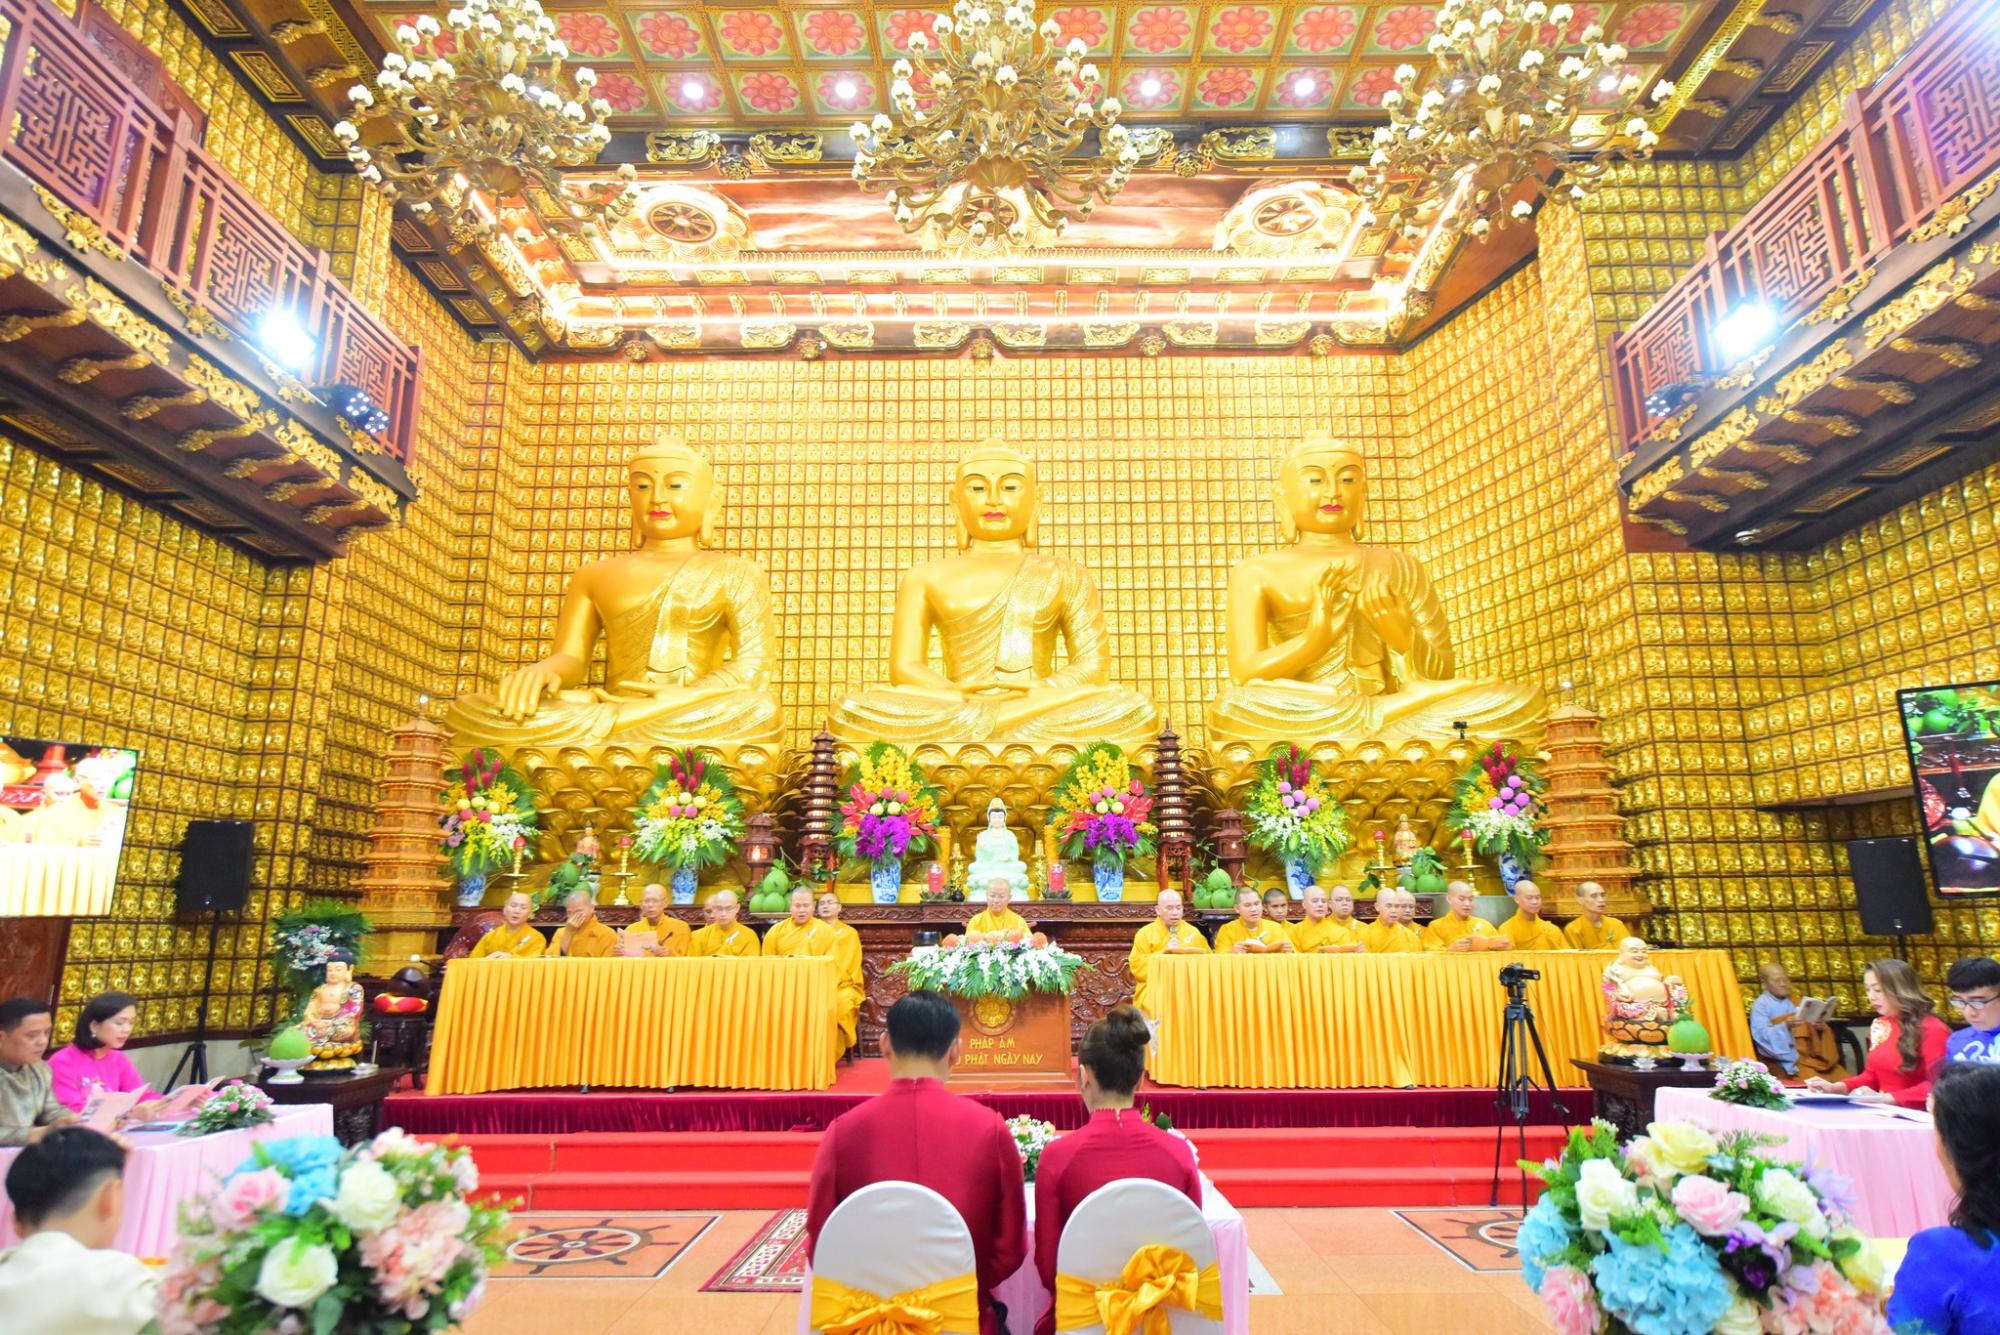 Lễ hằng thuận đặc biệt tại chùa Giác Ngộ: Ngày vui trong ánh đạo vàng       